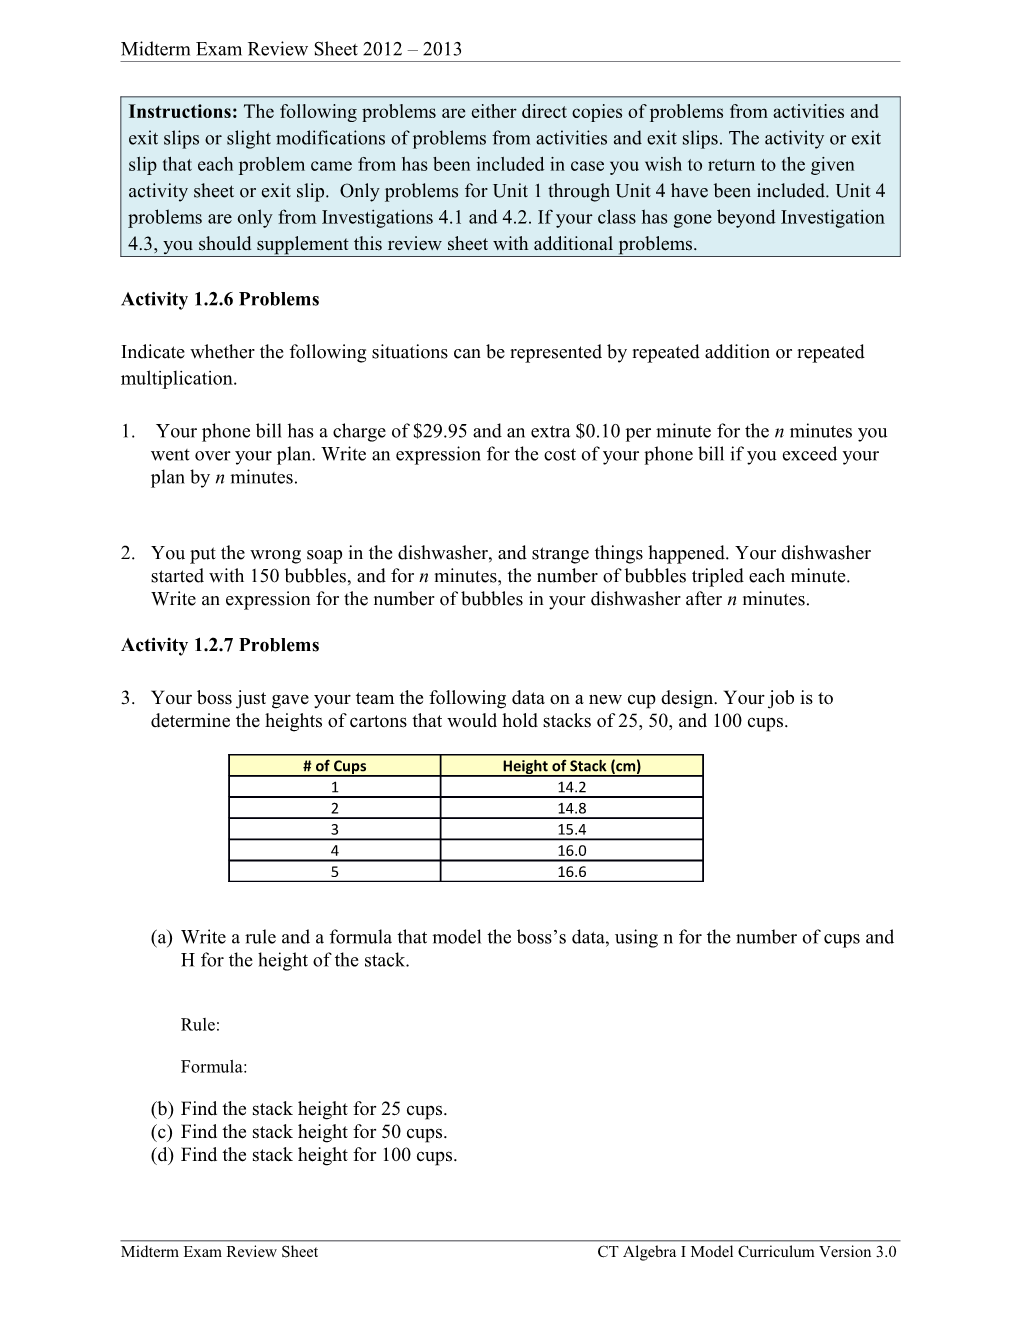 Midterm Exam Review Sheet 2012 2013